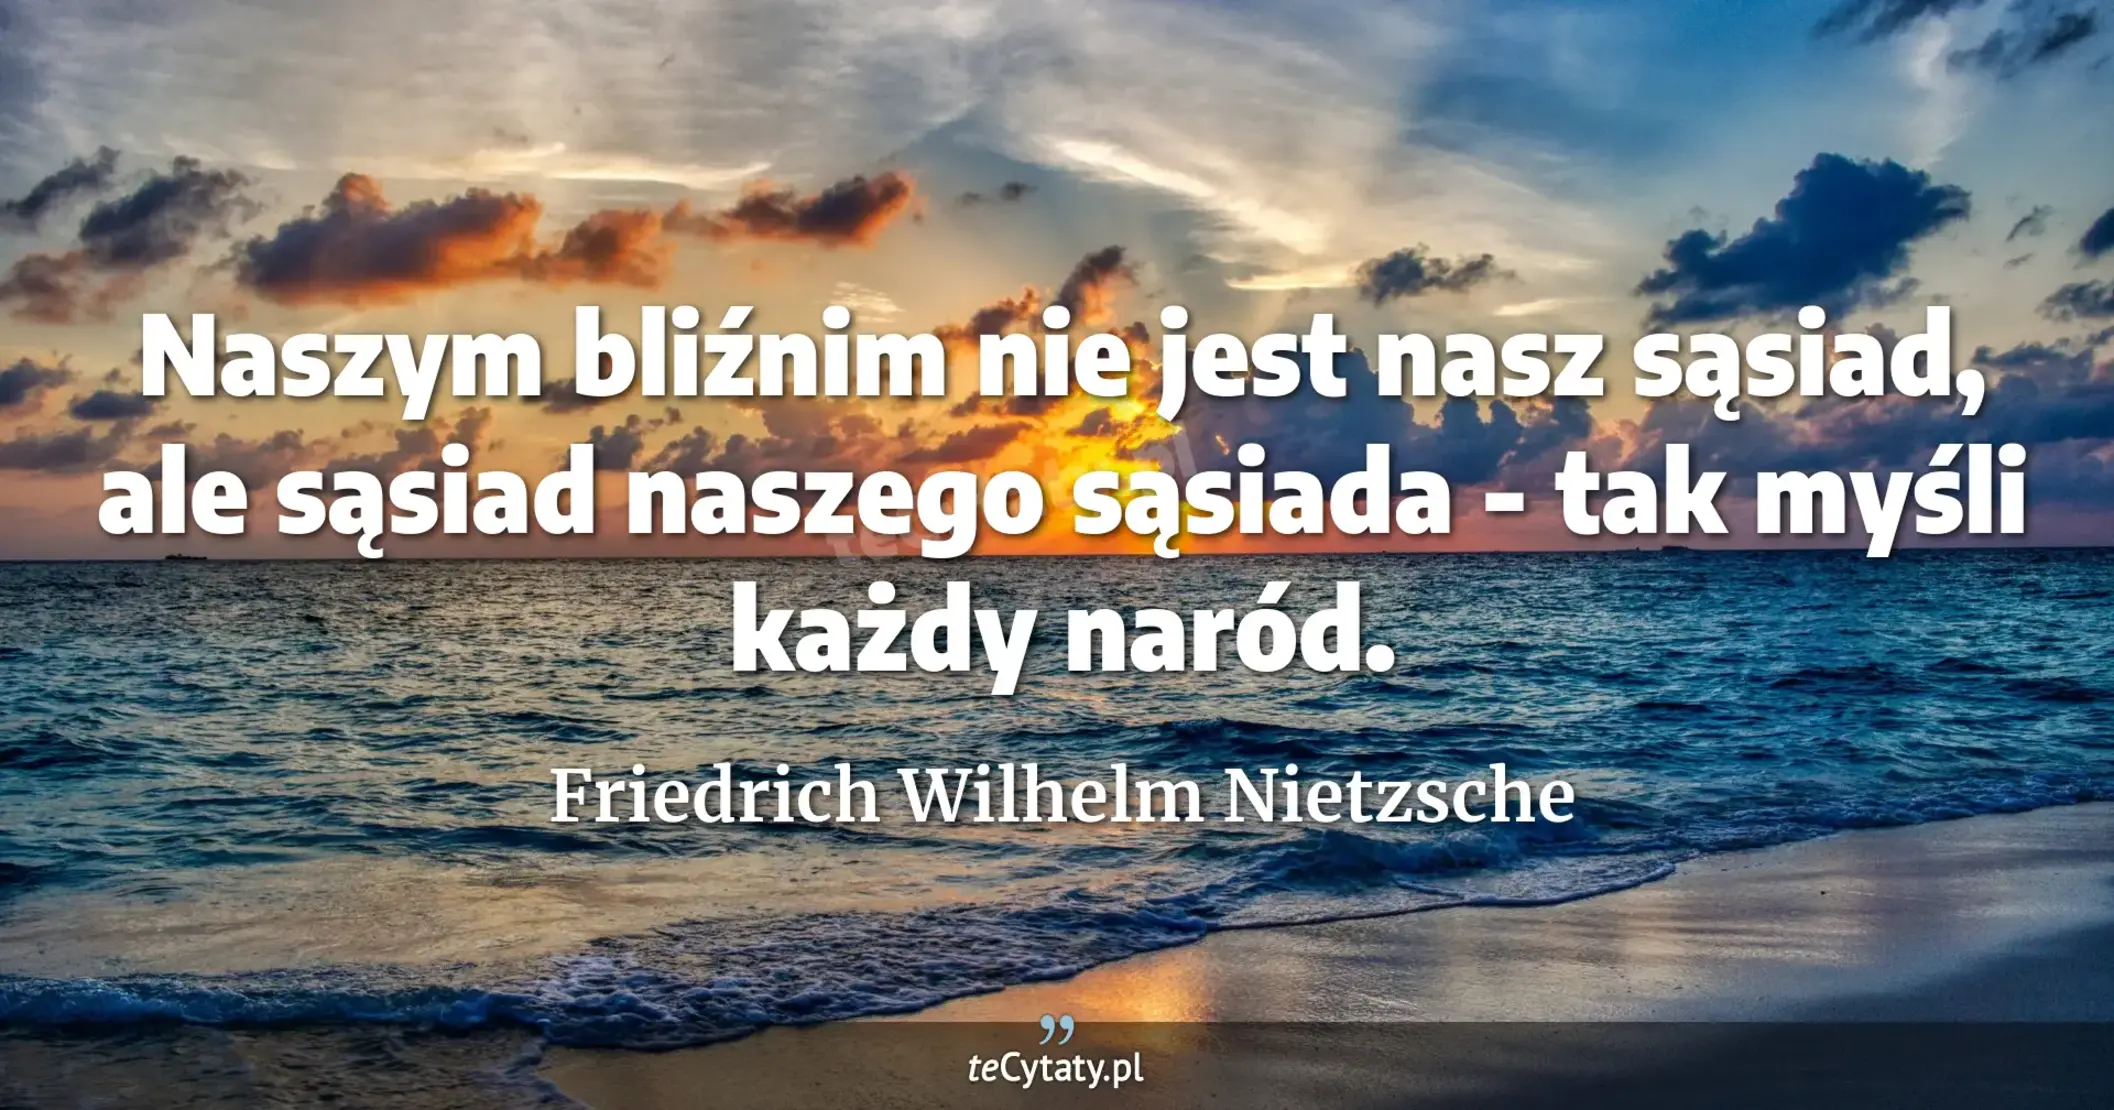 Naszym bliźnim nie jest nasz sąsiad, ale sąsiad naszego sąsiada - tak myśli każdy naród. - Friedrich Wilhelm Nietzsche